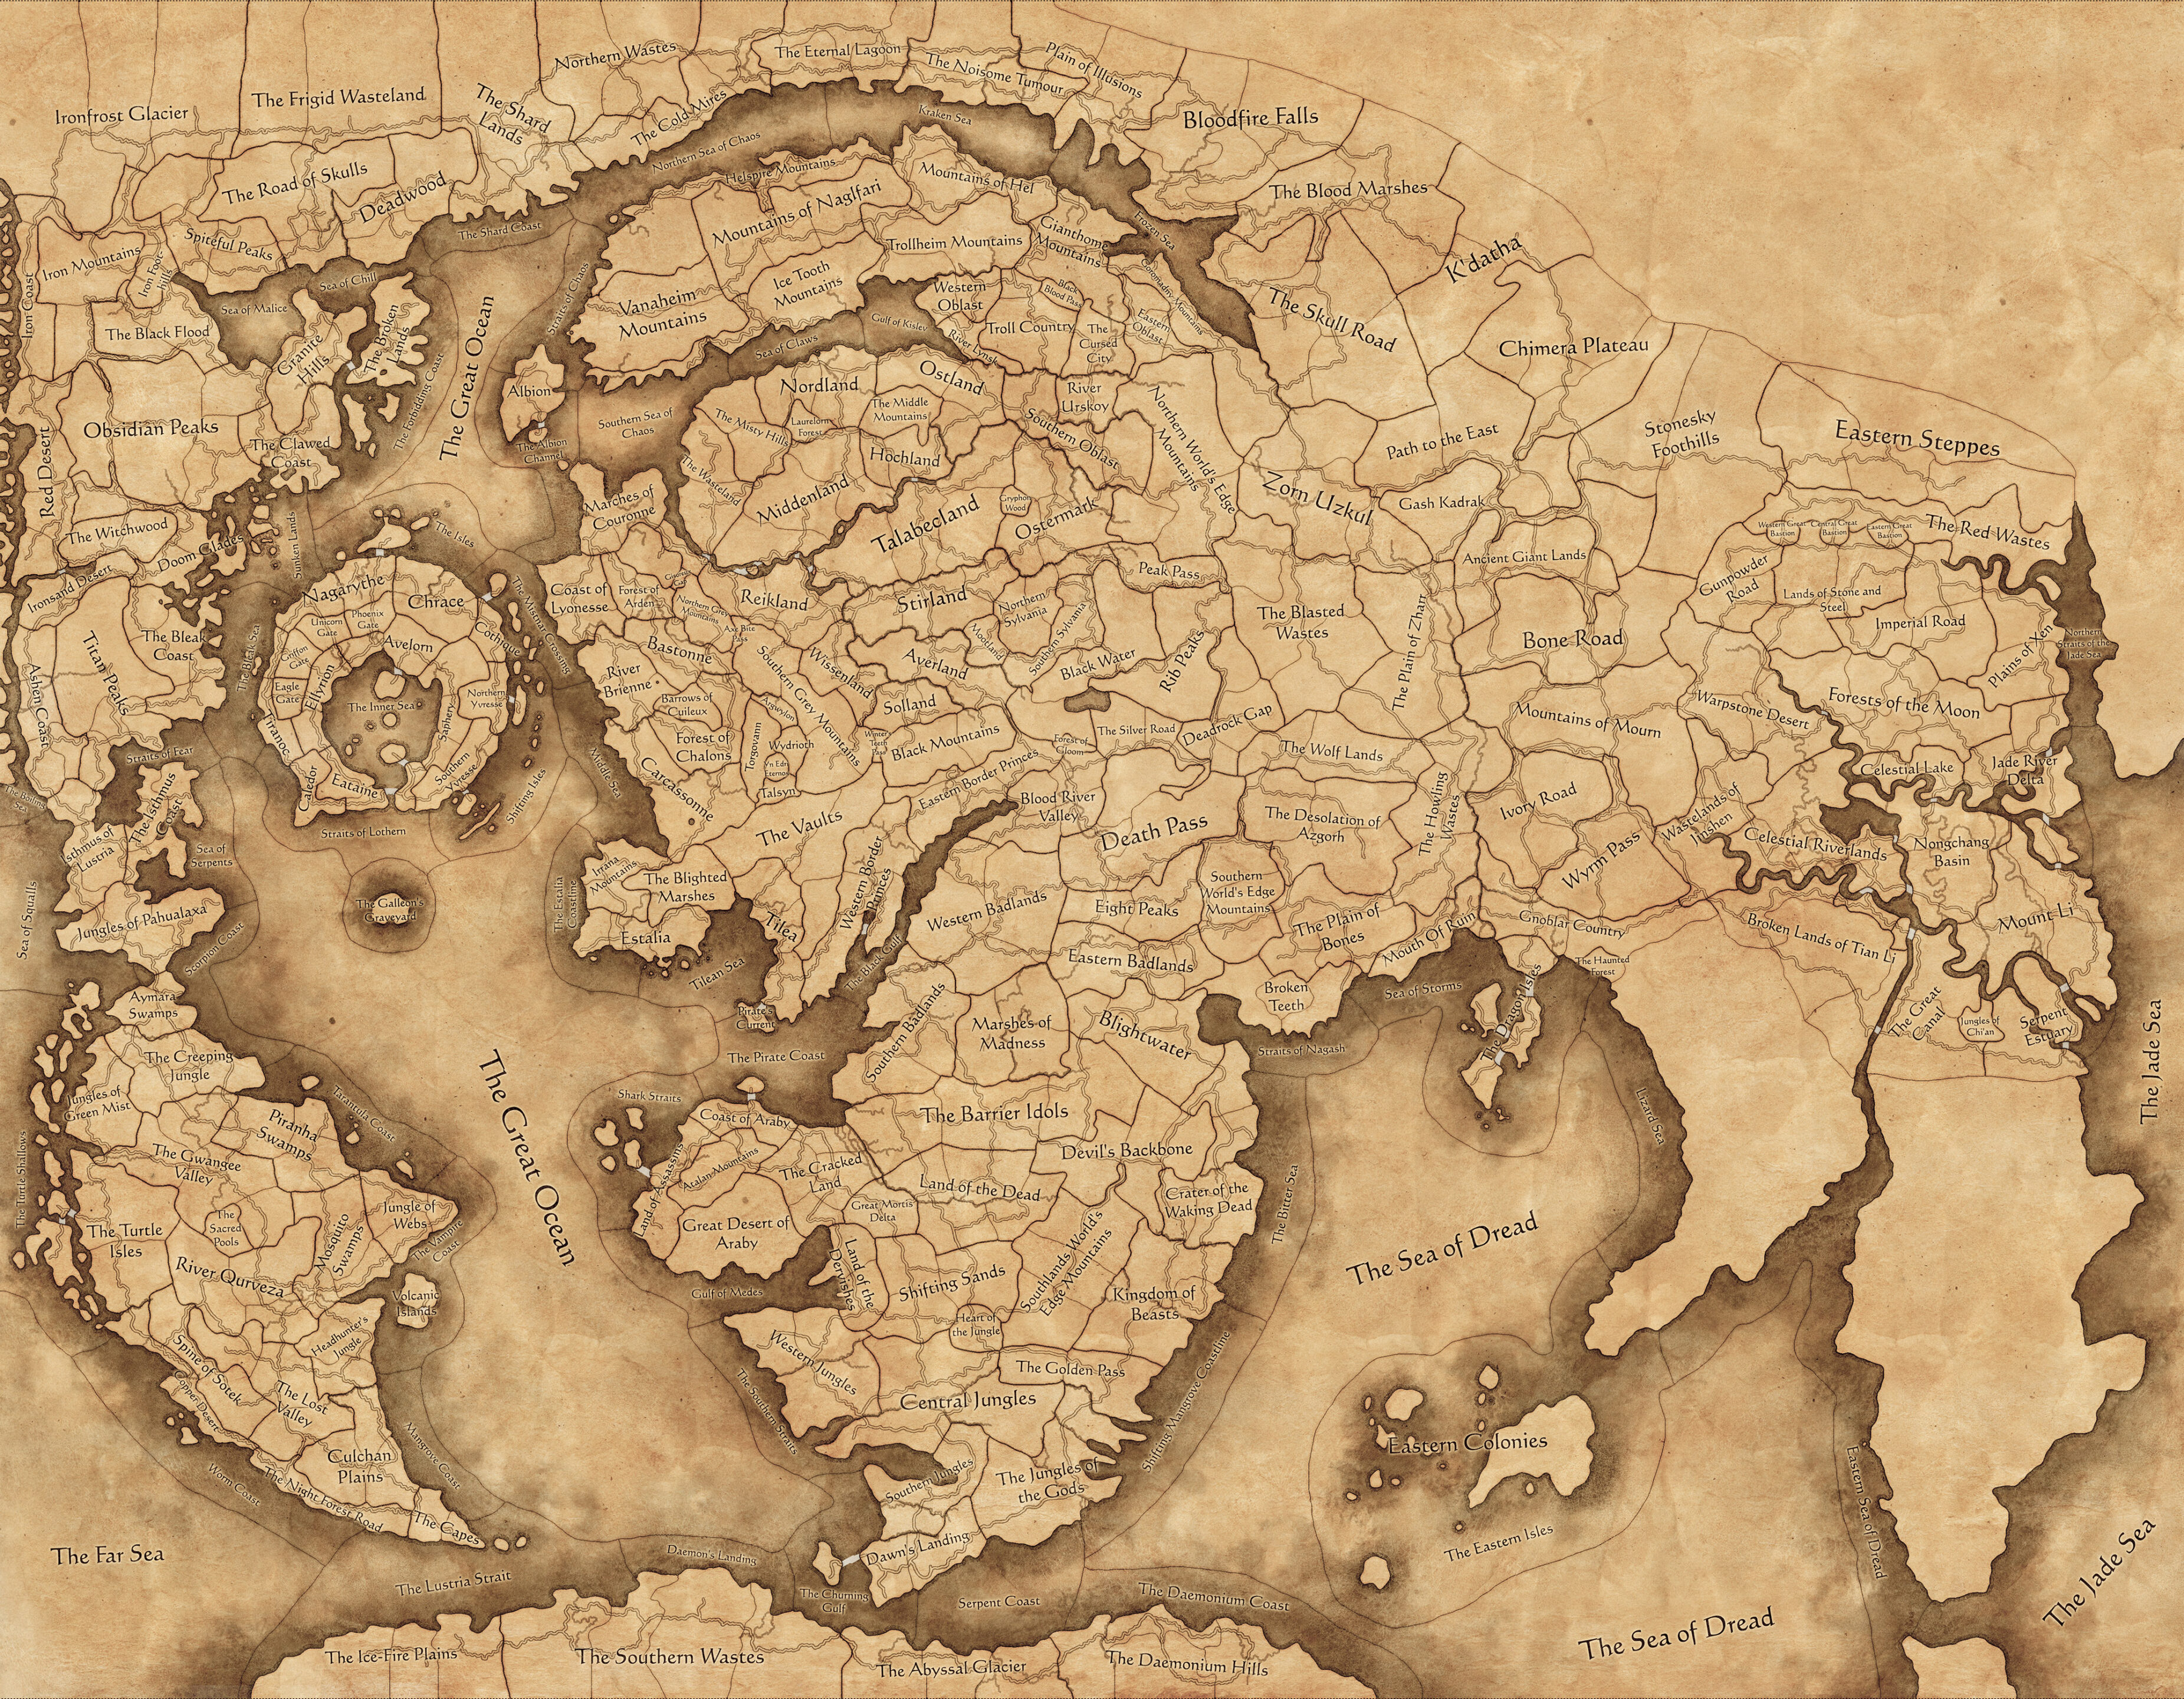 Un'immagine della guerra totale: Warhammer III IMMORTAL Empires Map Map, che copre gran parte del mondo Warhammer